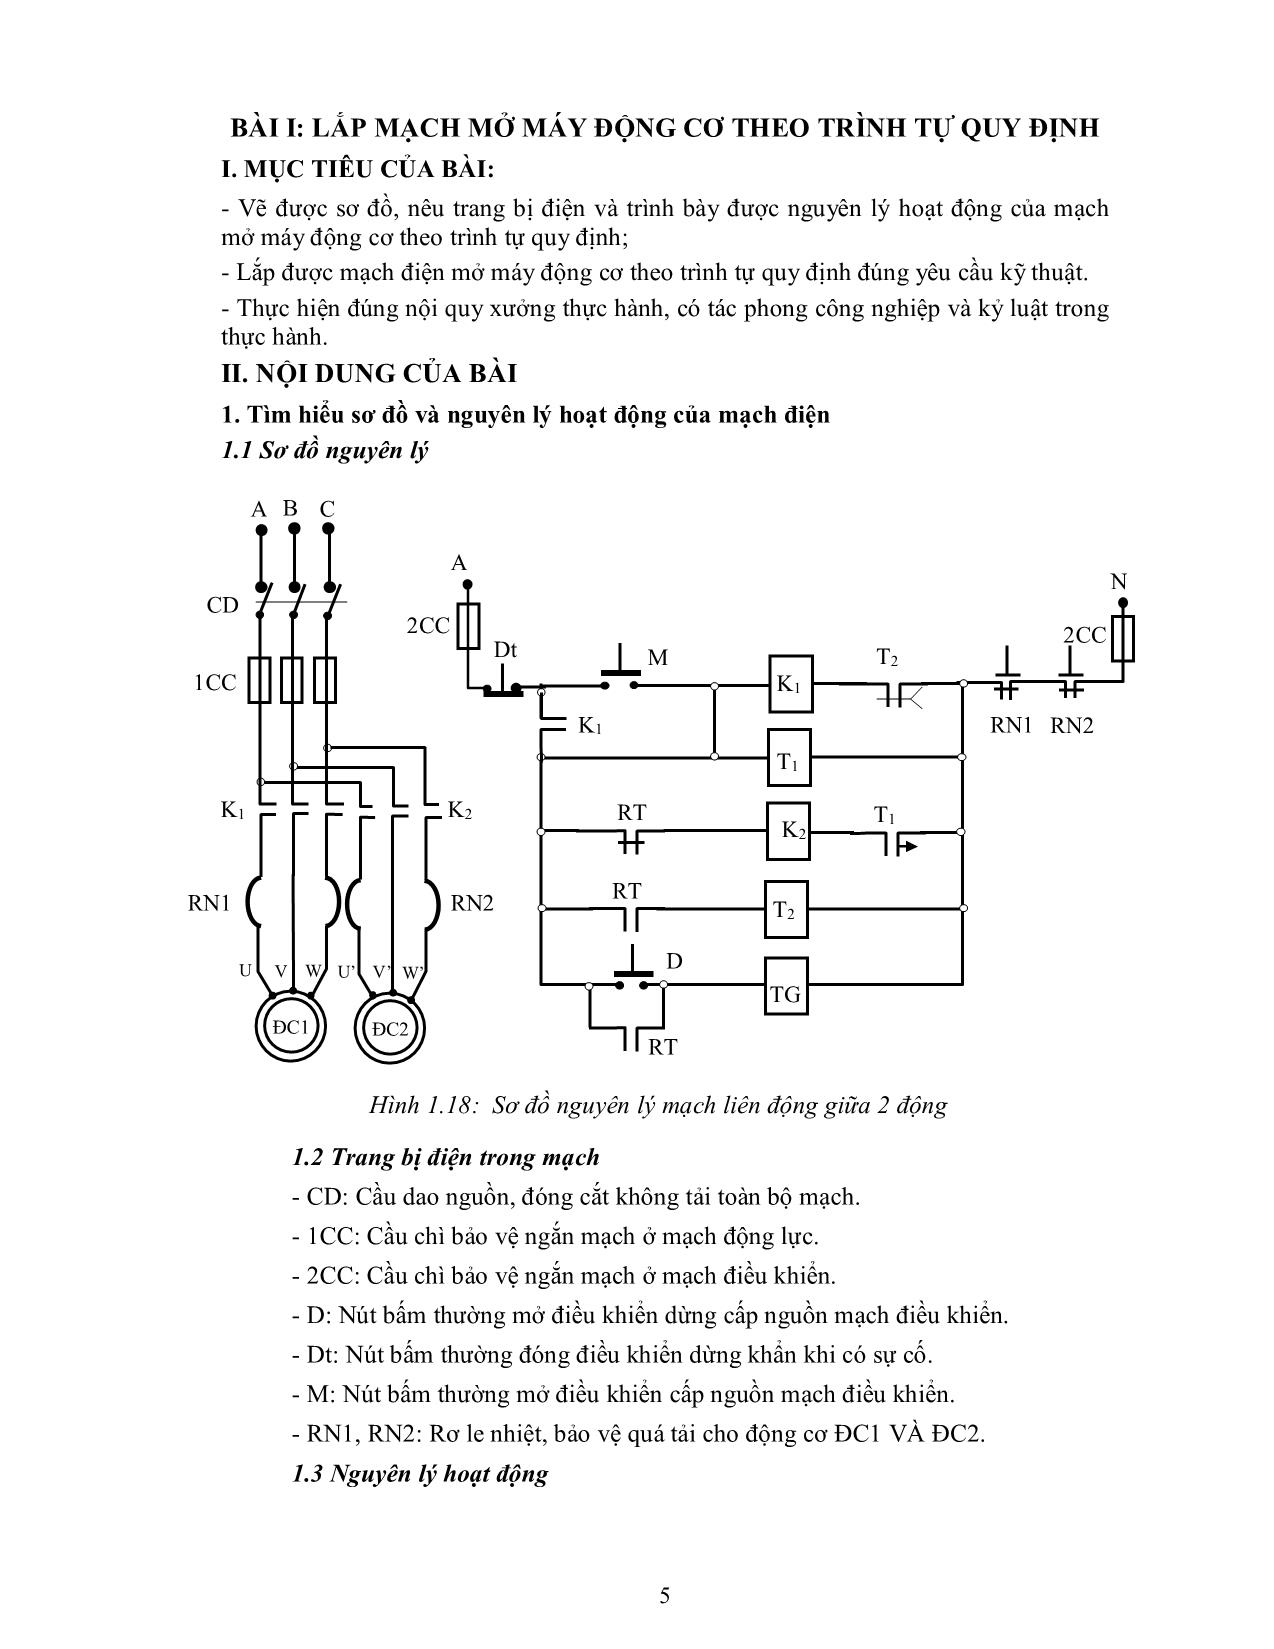 Bài giảng mô đun Thực hành lắp mạch điều khiển trang 6